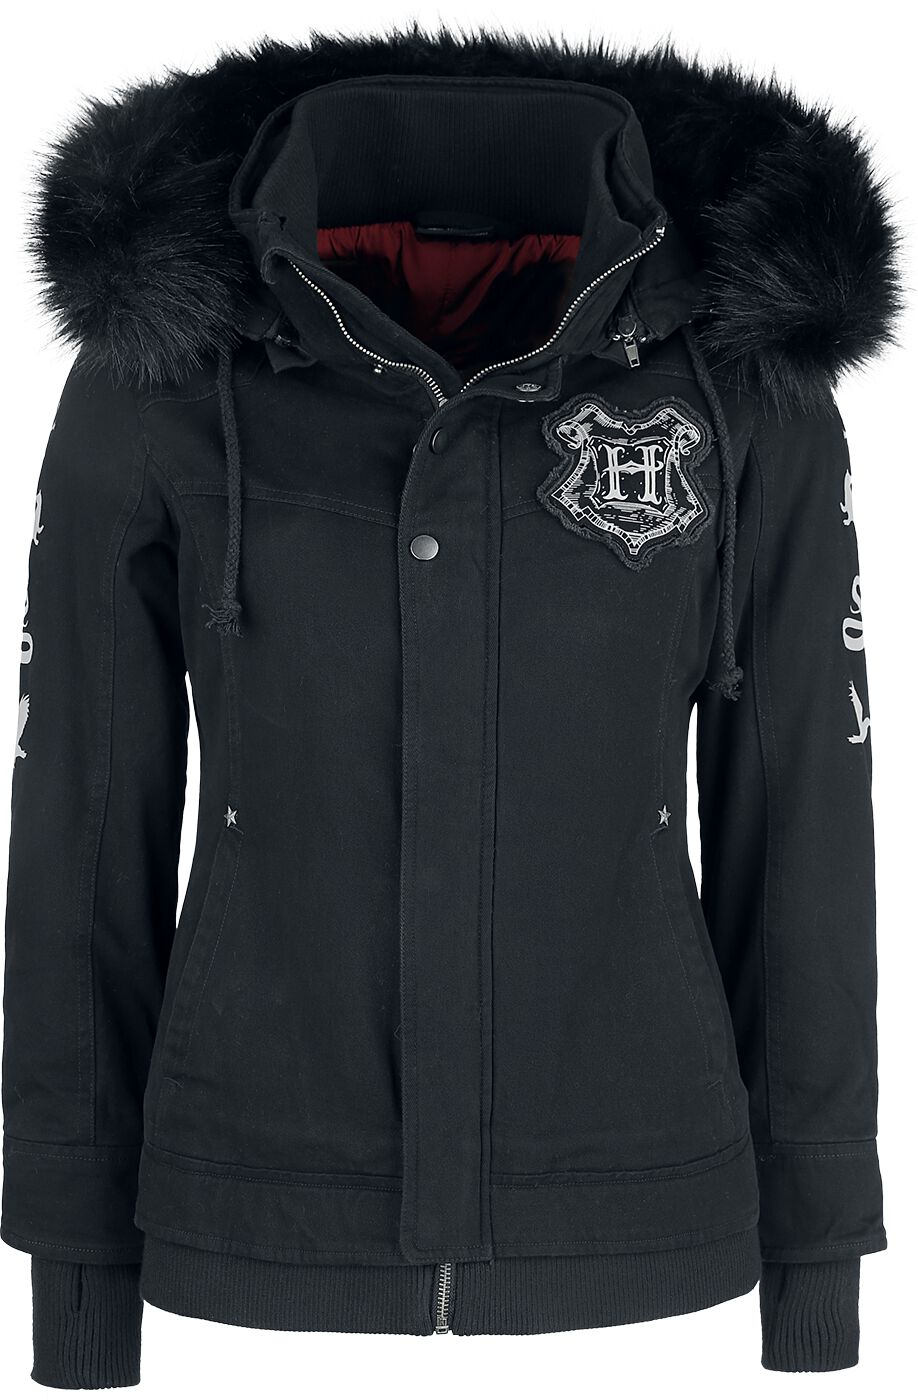 Harry Potter Winterjacke - Hogwarts Crest - XS bis XXL - für Damen - Größe XXL - schwarz  - EMP exklusives Merchandise!